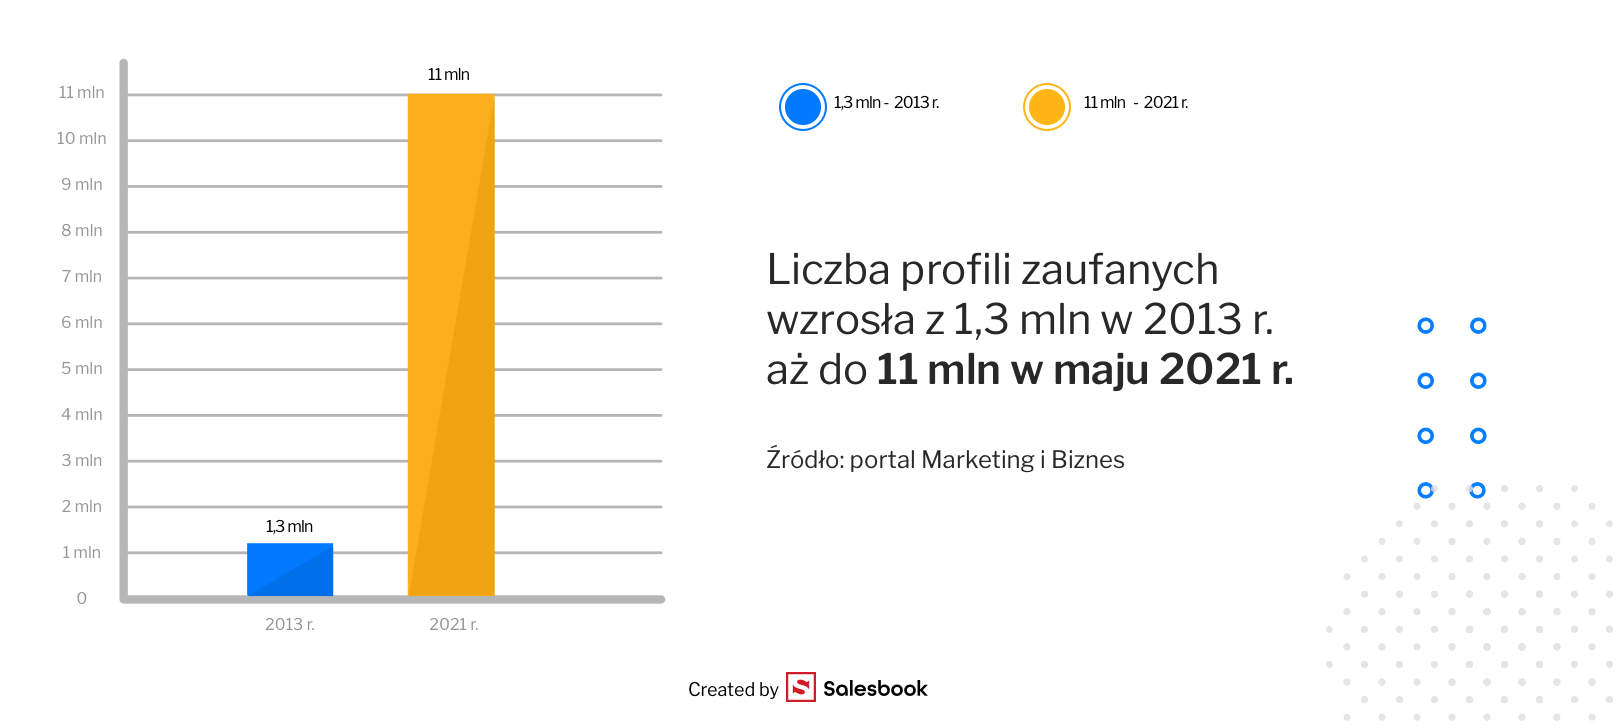 Fot. 9. Liczba profili zaufanych w Polsce ciągle wzrasta. Zdalne podpisywanie umów